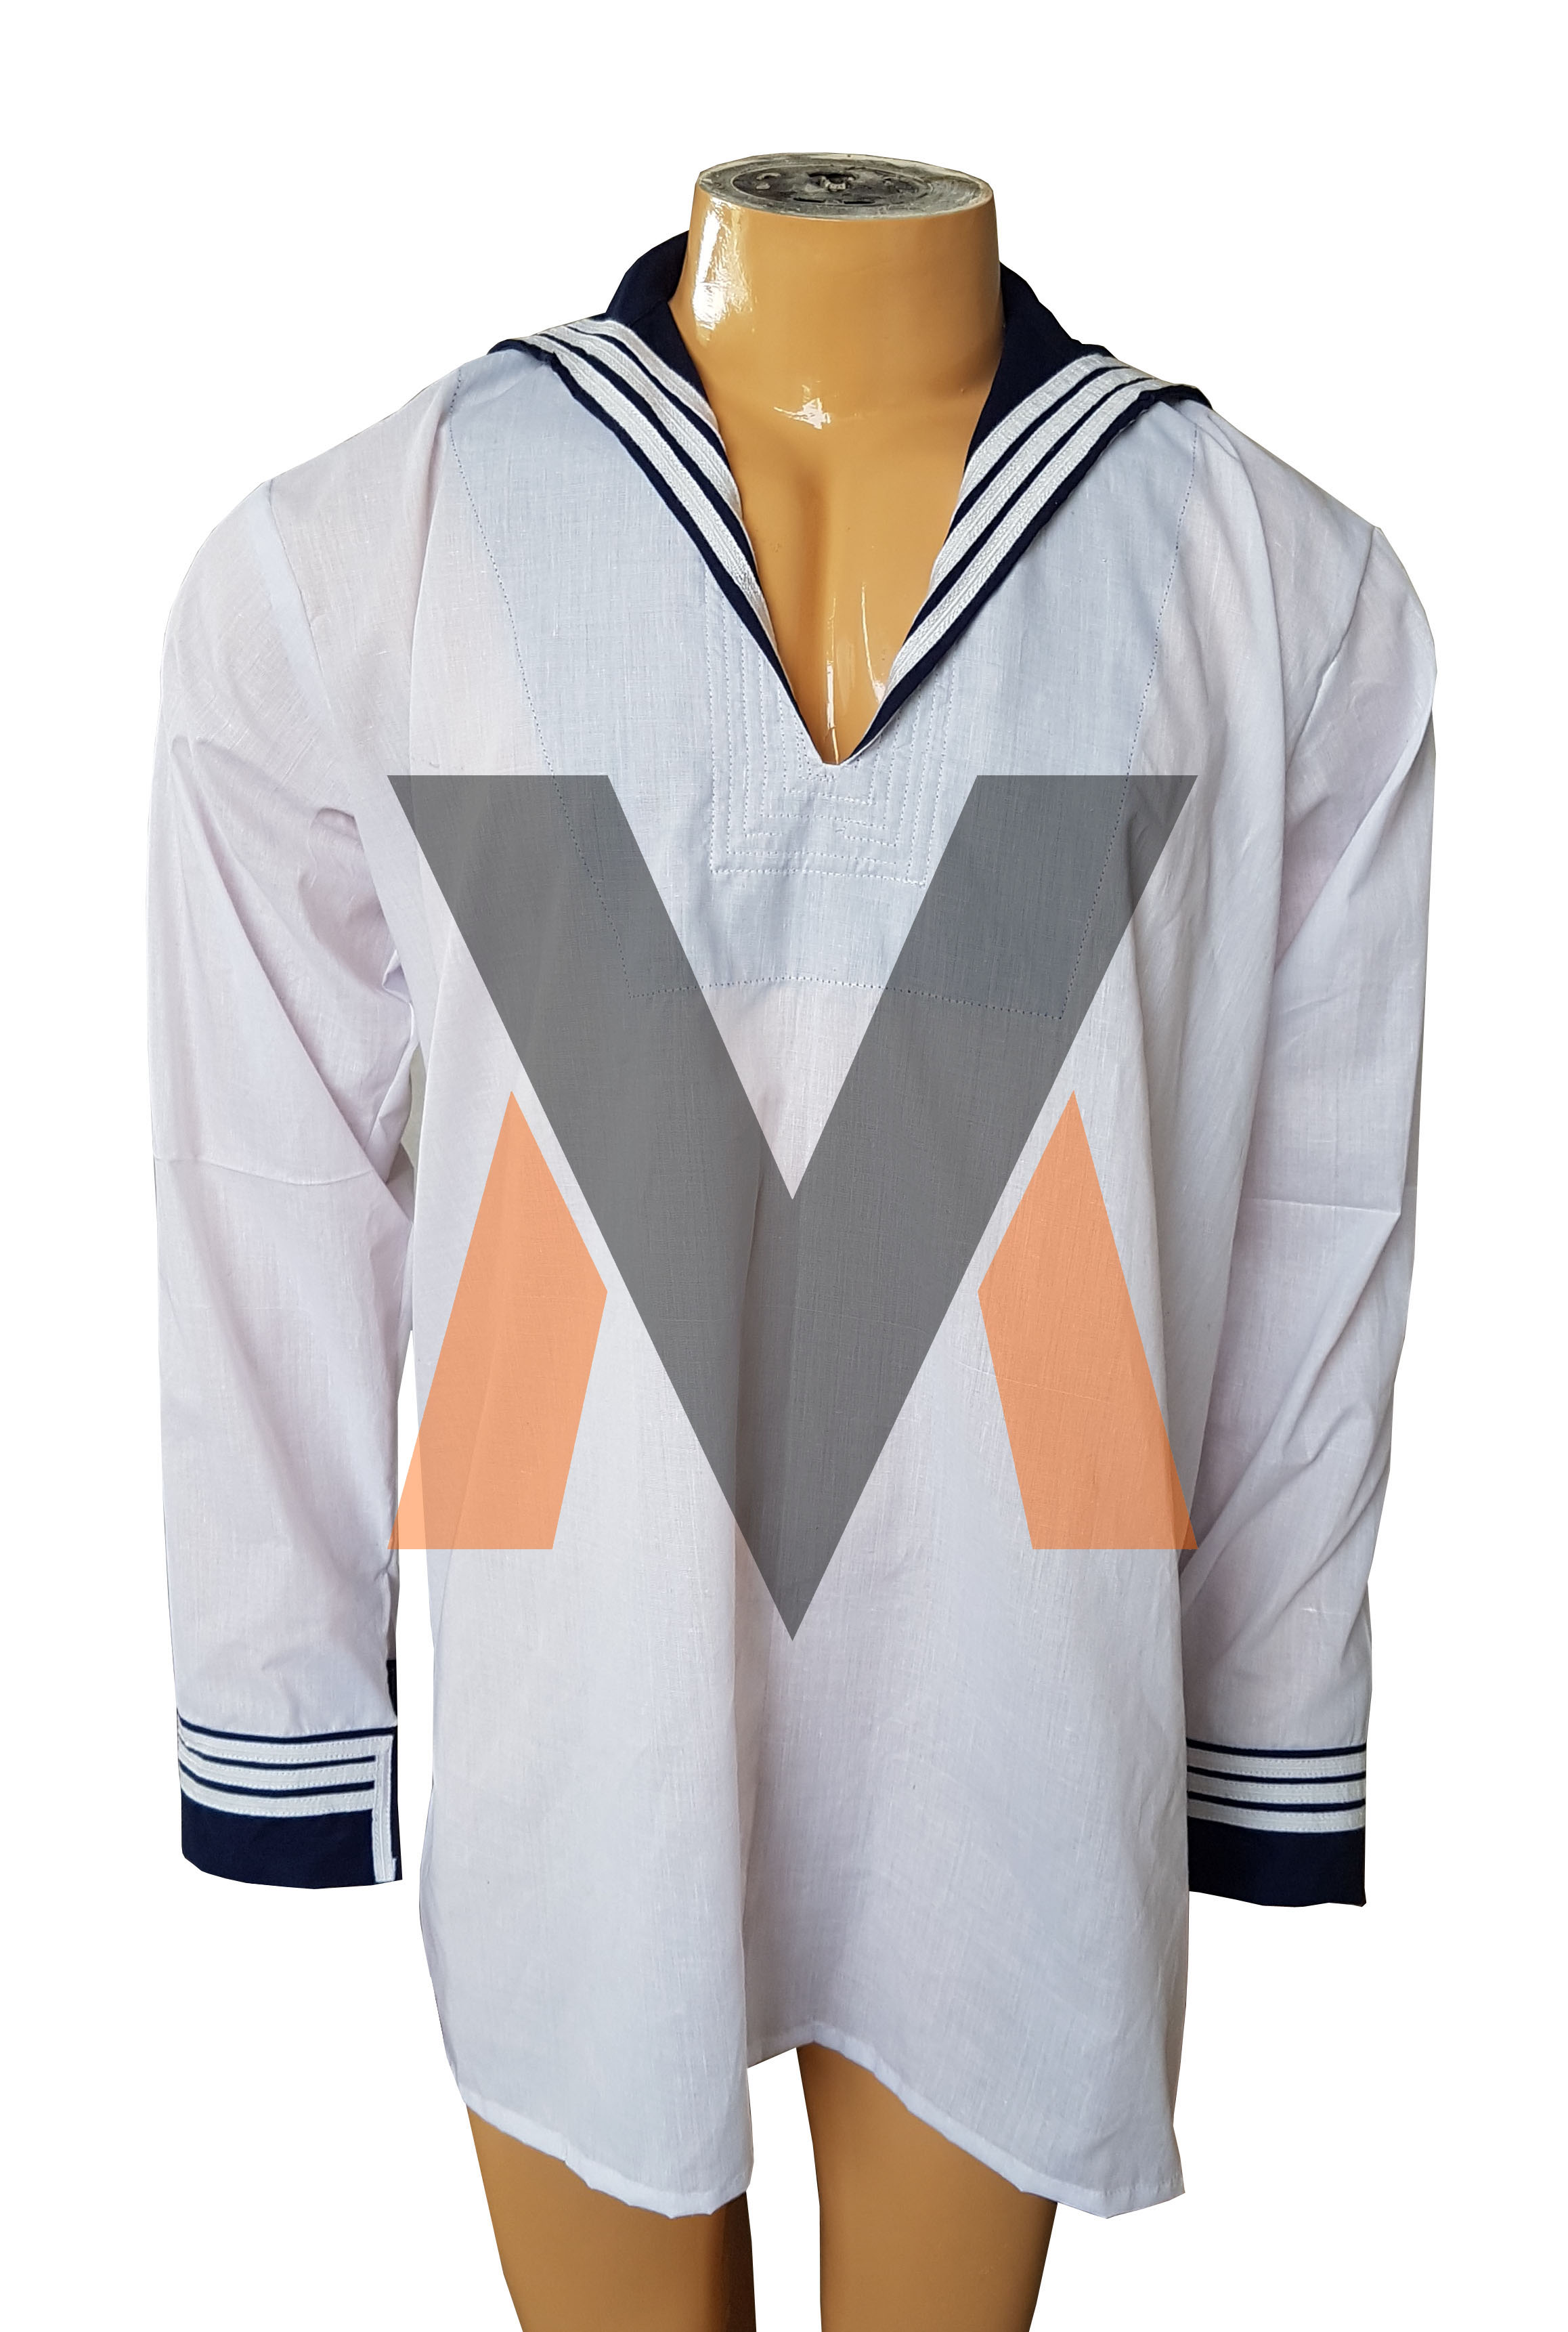 WW2 Kriegsmarine Shirt